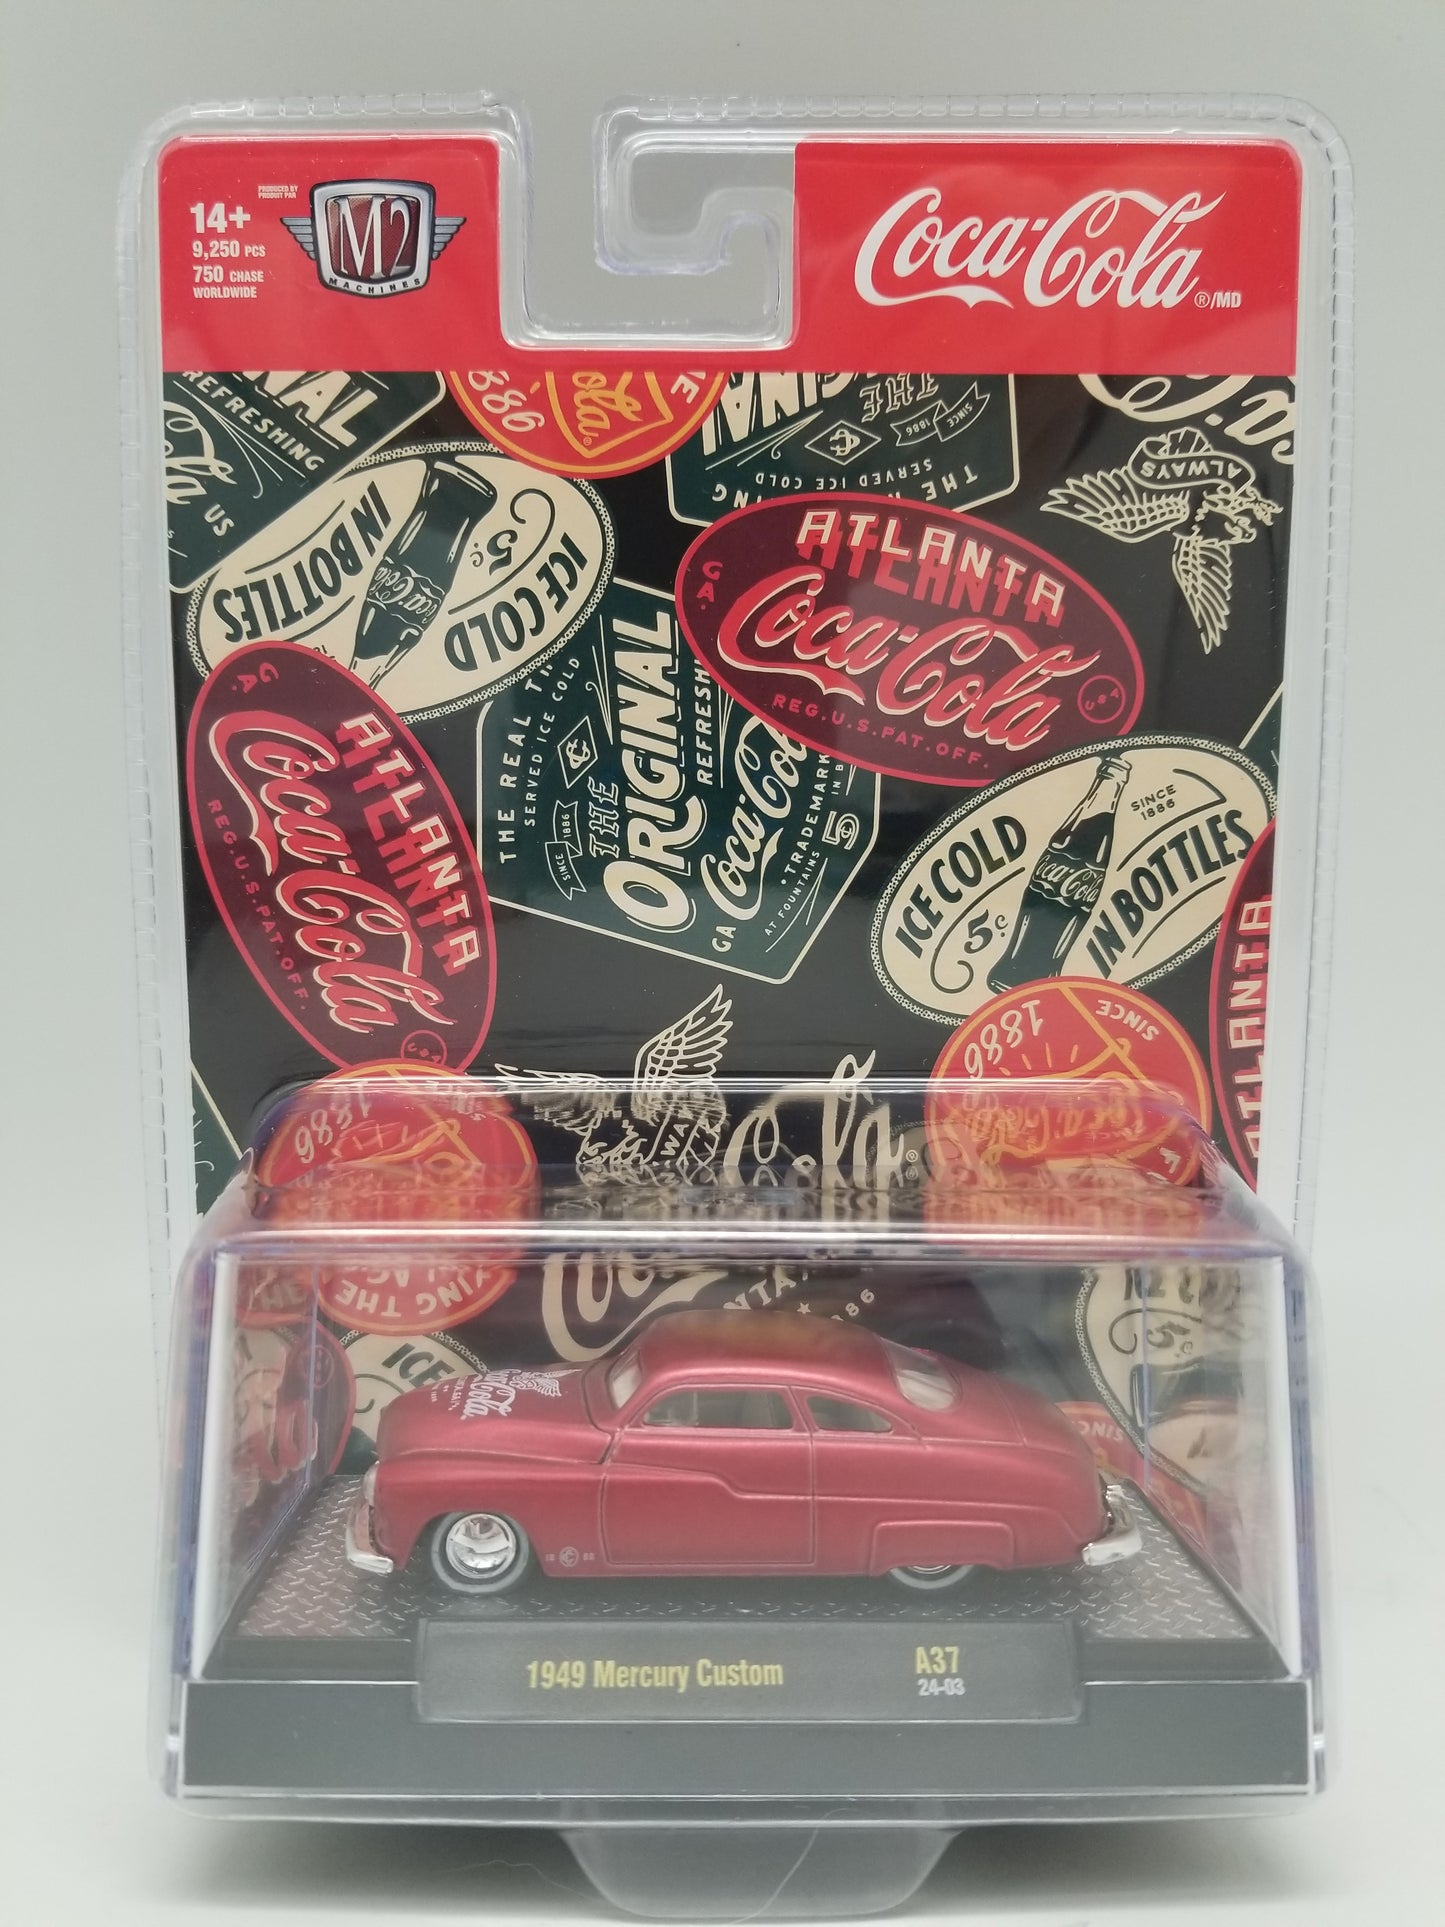 M2 1949 Mercury Custom - Coca-Cola